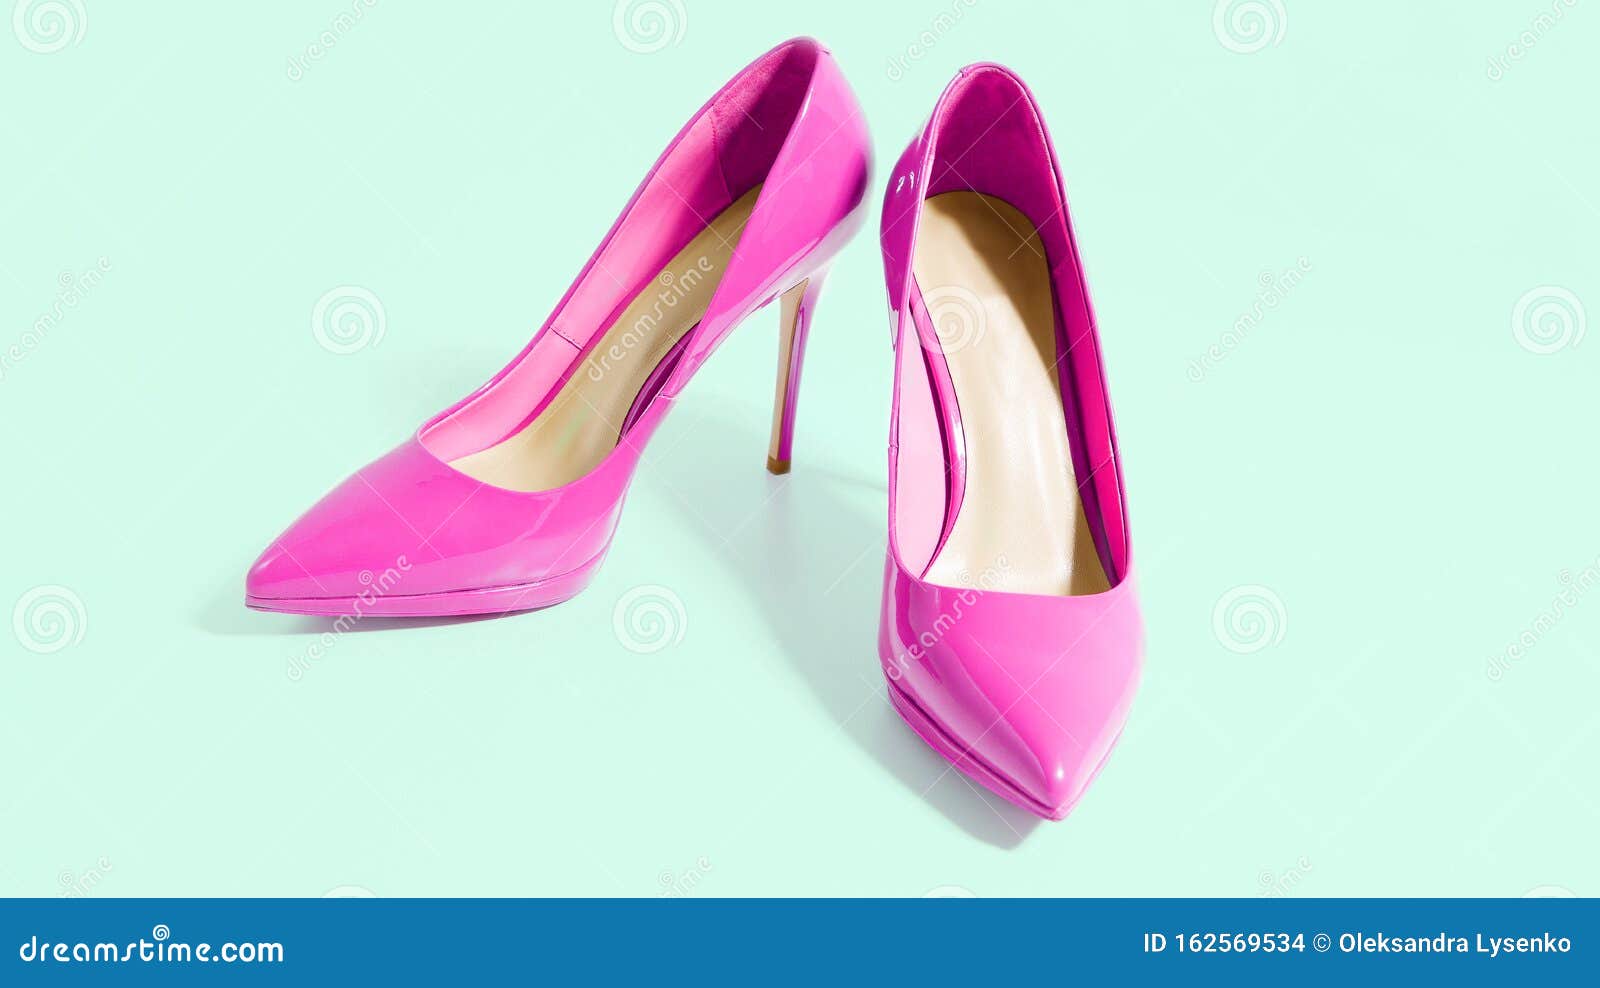 Pancarta De Zapatos Rosados De Mujer Los Tacones Altos Se Vista Superior La Femenina Accesorios Para Zapato Fo Foto de archivo - Imagen de accesorios, copia: 162569534